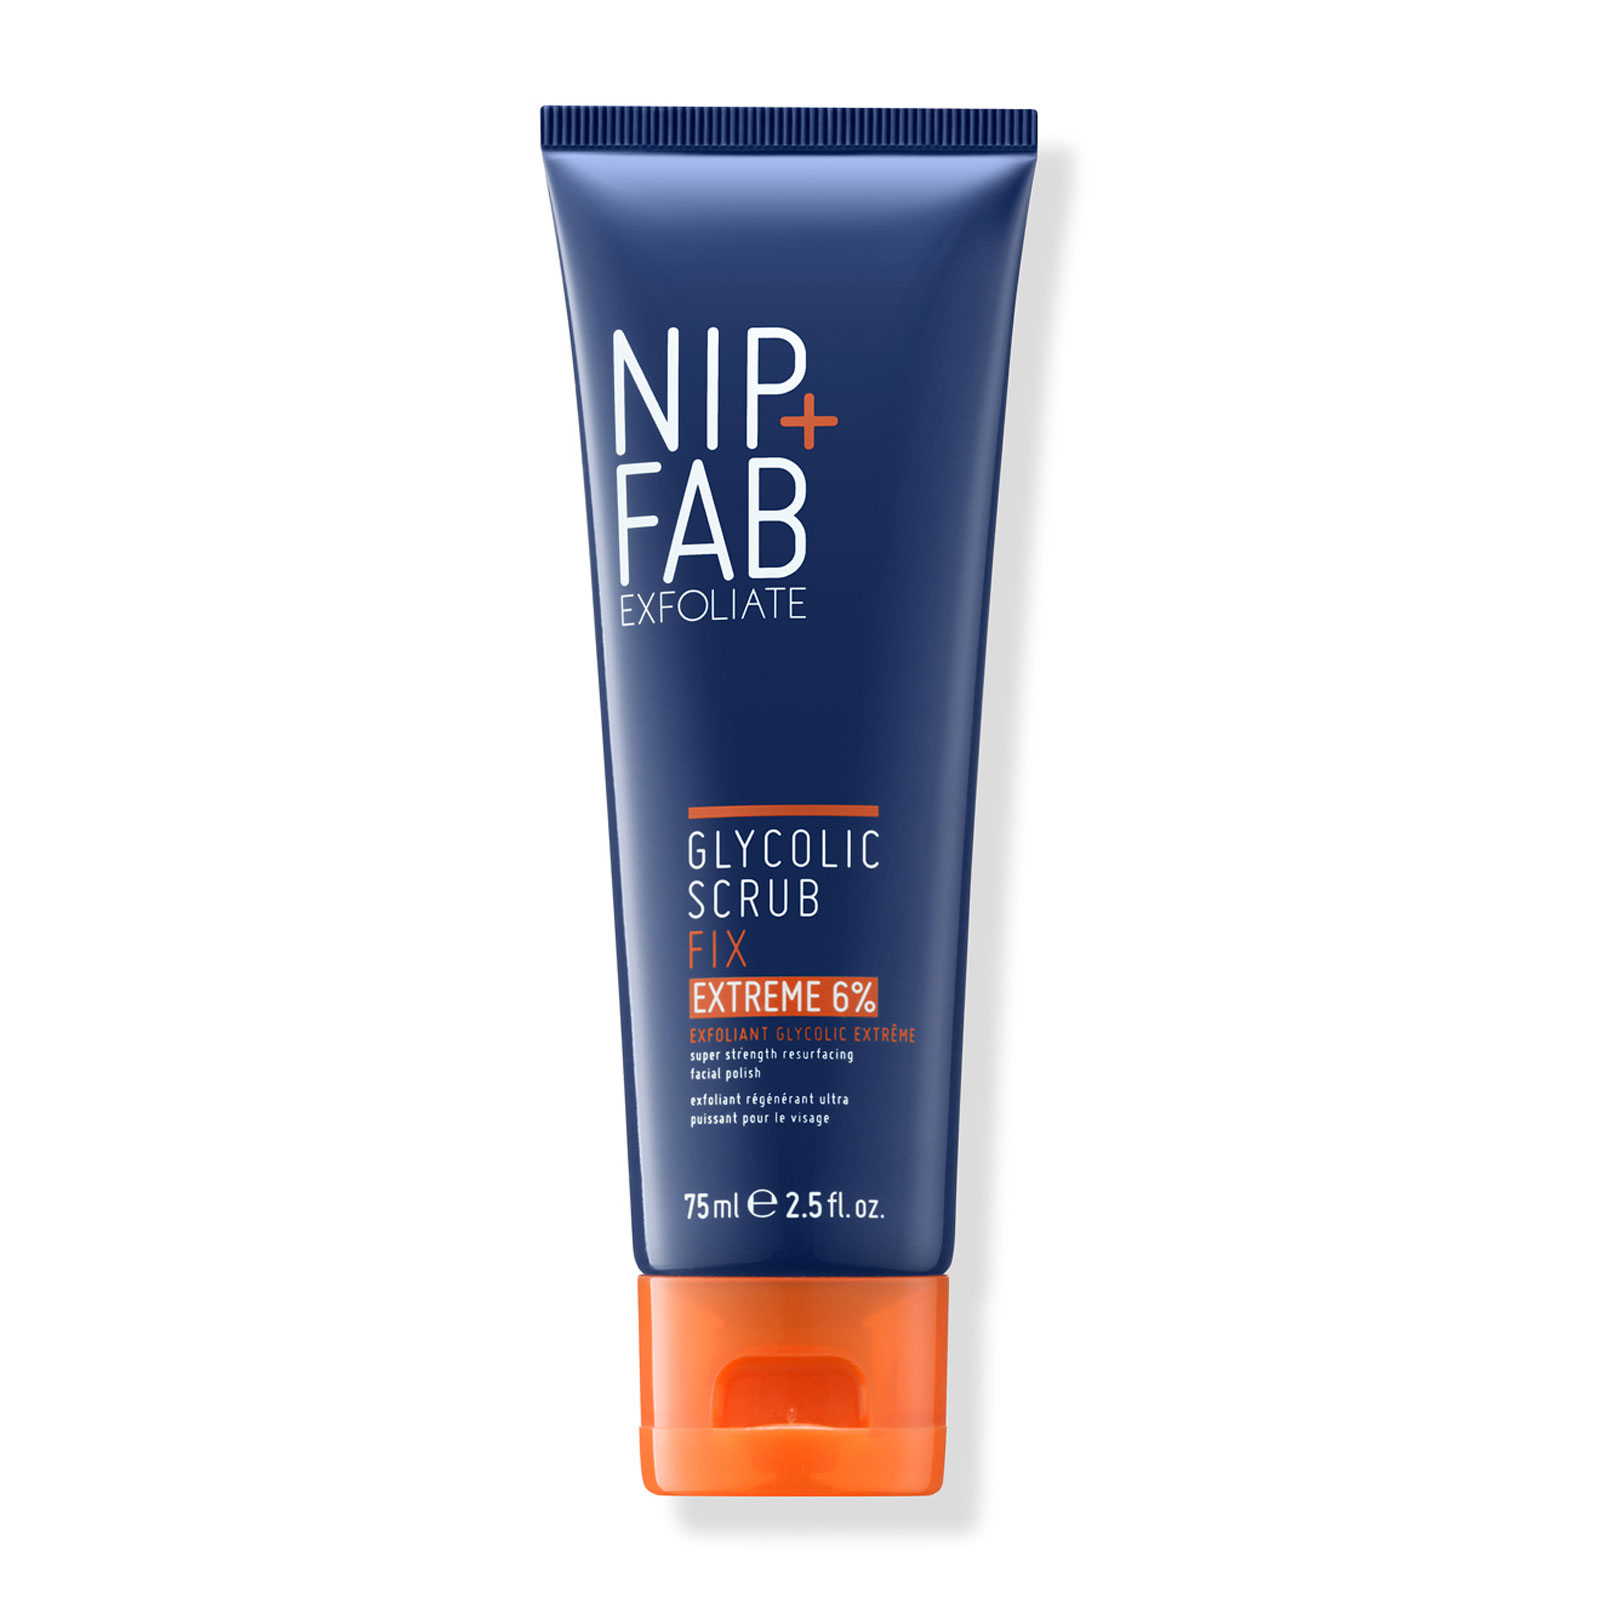 NIP+FAB 乙醇酸修护磨砂膏 75ml